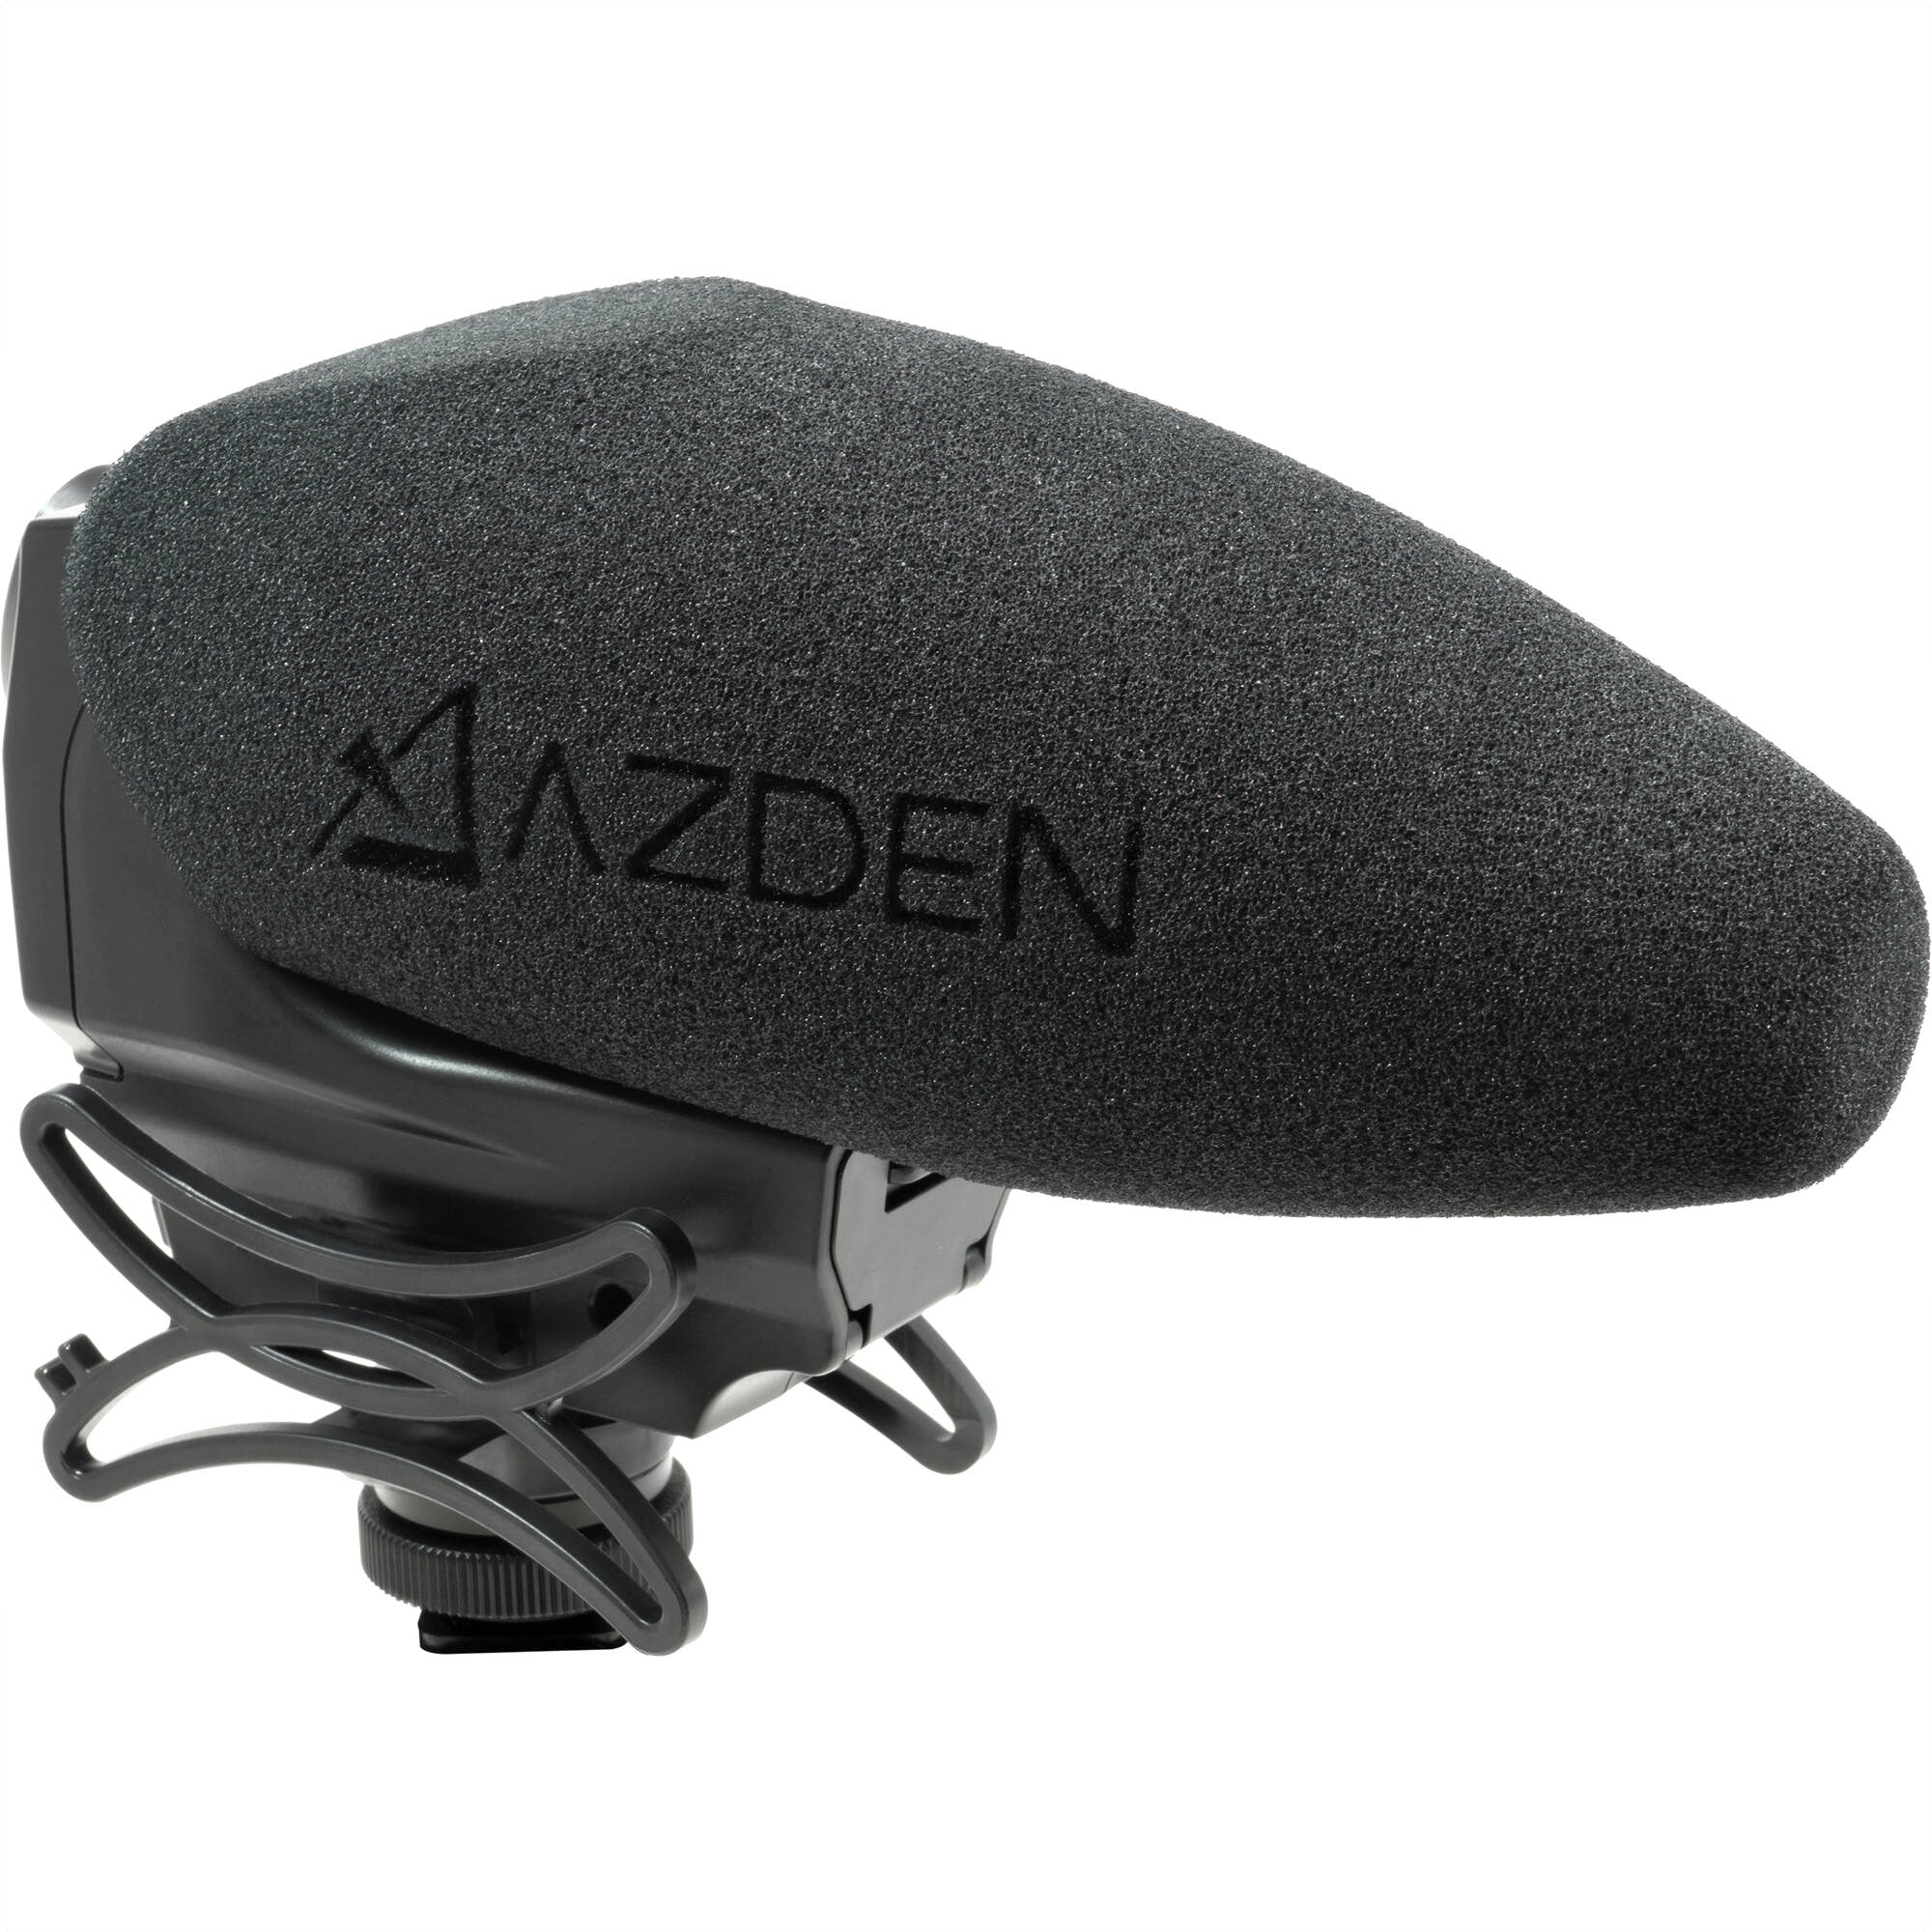 Azden Stereo/Mono Mixable Video Microphone